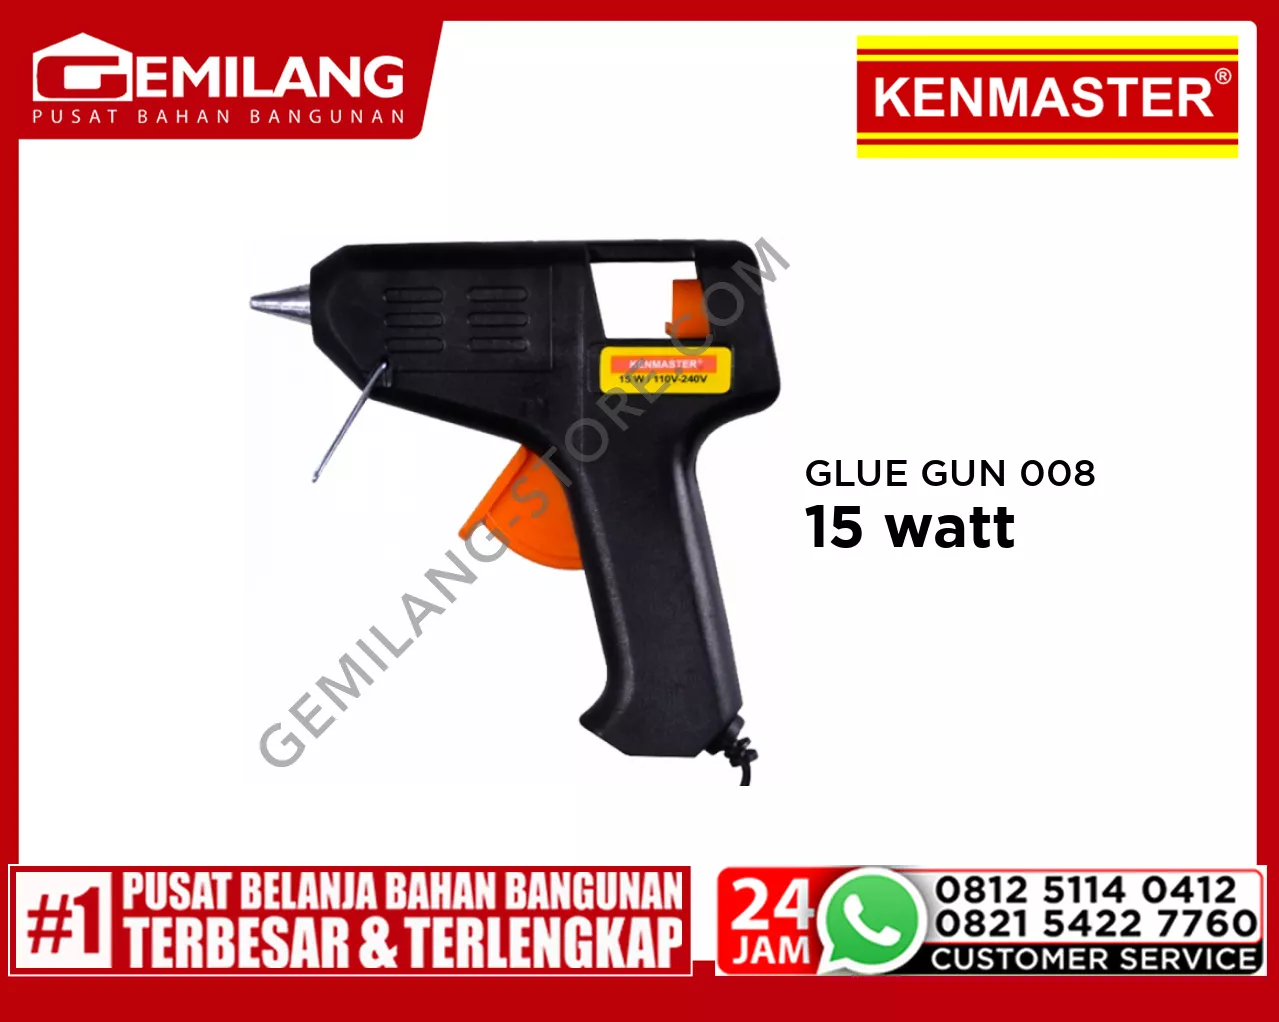 KENMASTER GLUE GUN 008 15w